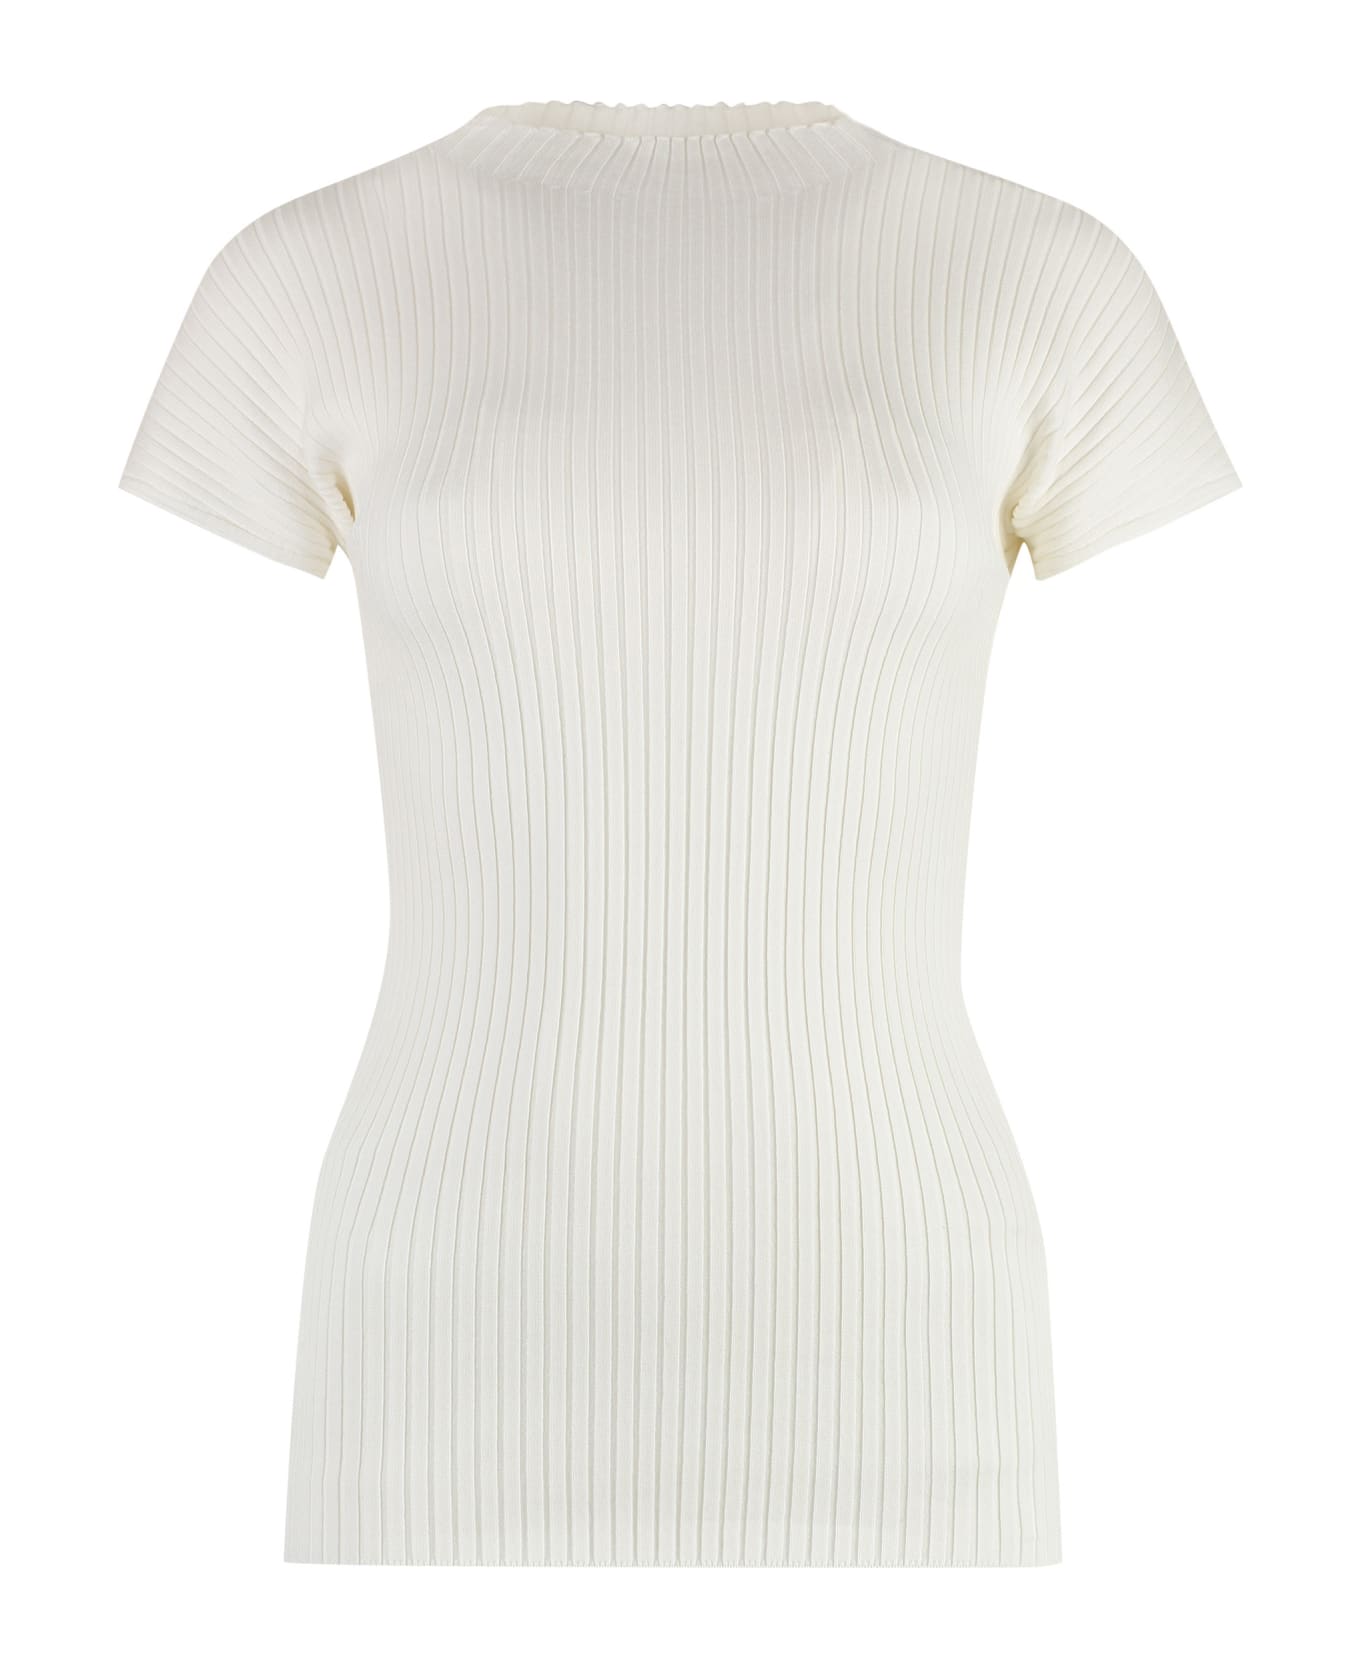 Fabiana Filippi Cotton Knit T-shirt - White